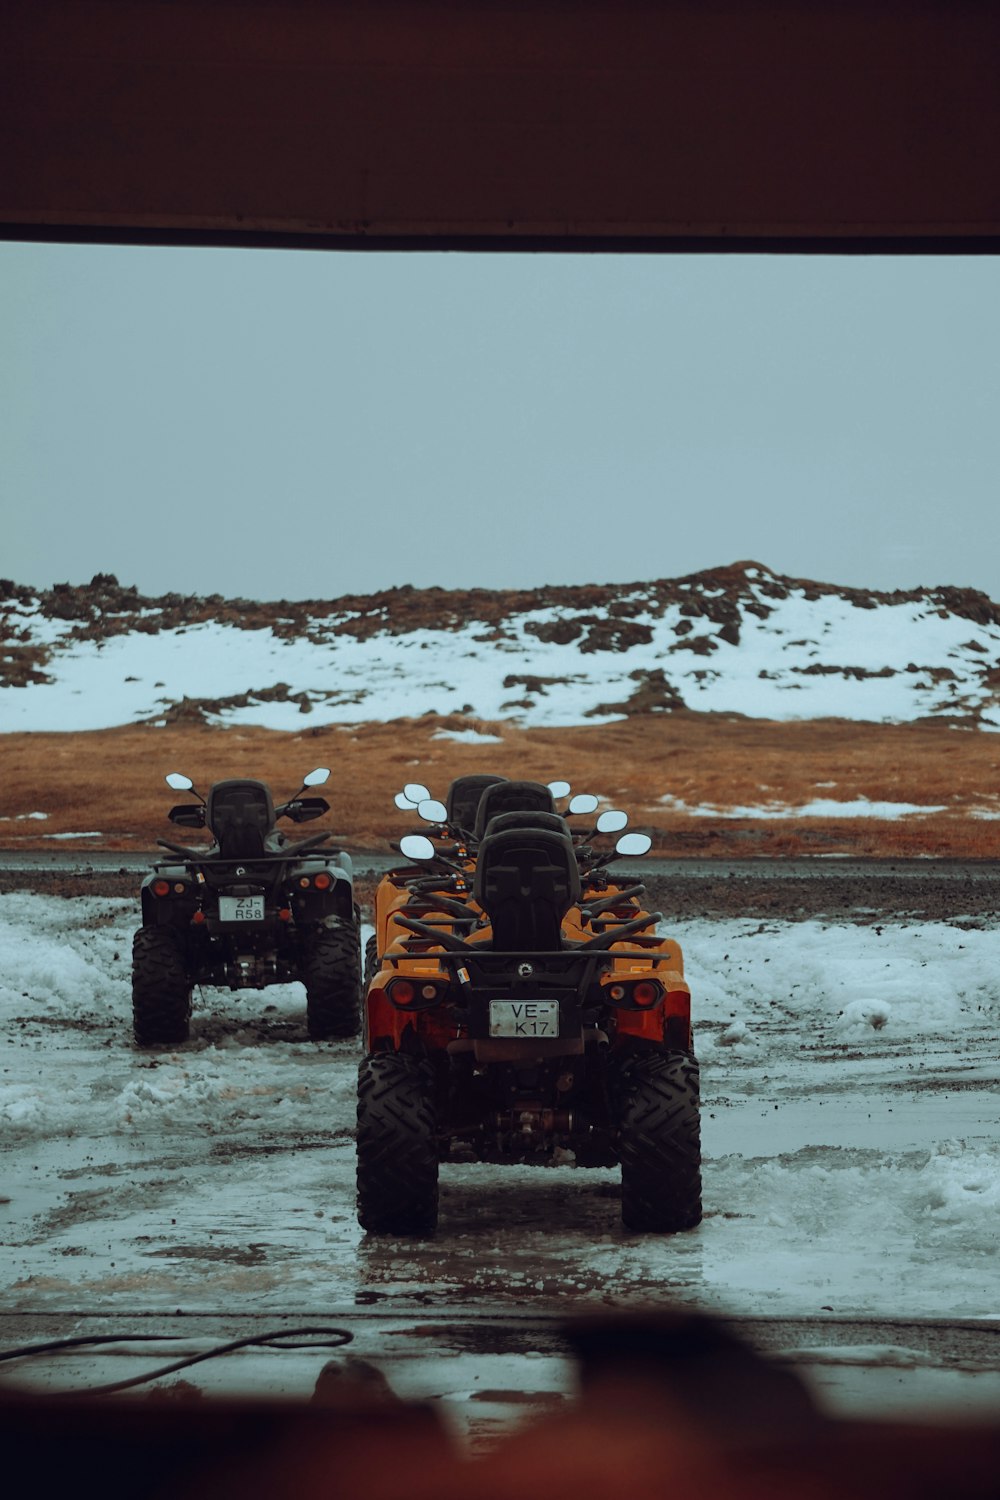 Un paio di quattro ruote che guidano lungo una strada coperta di neve